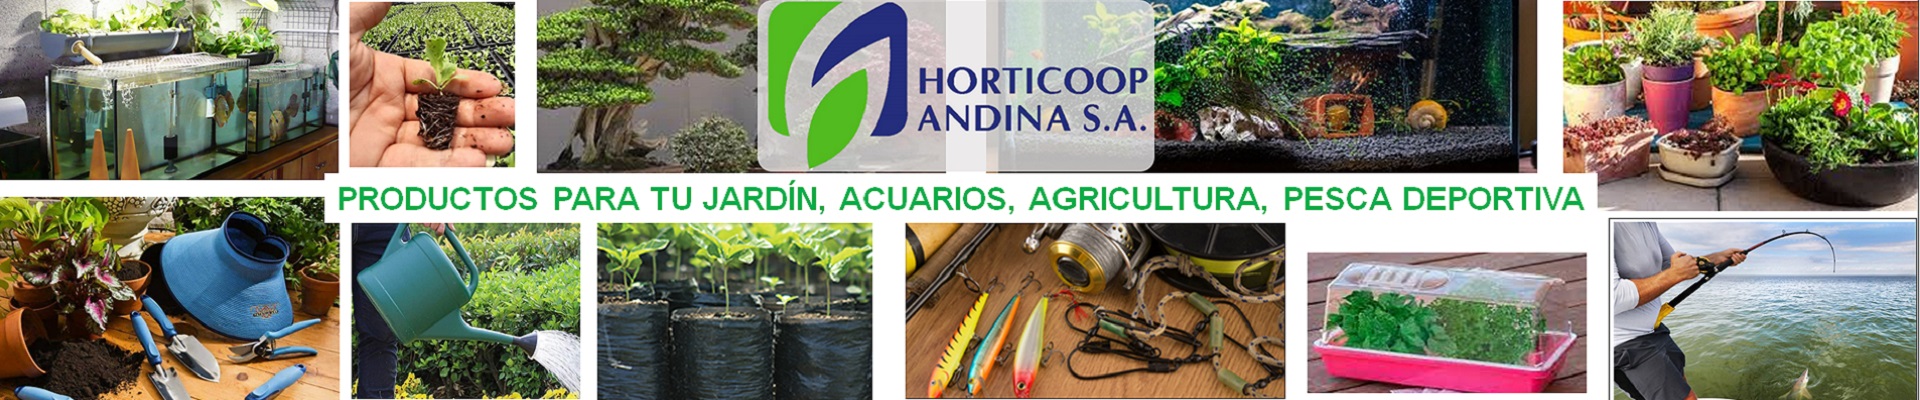 Horticoop Andina